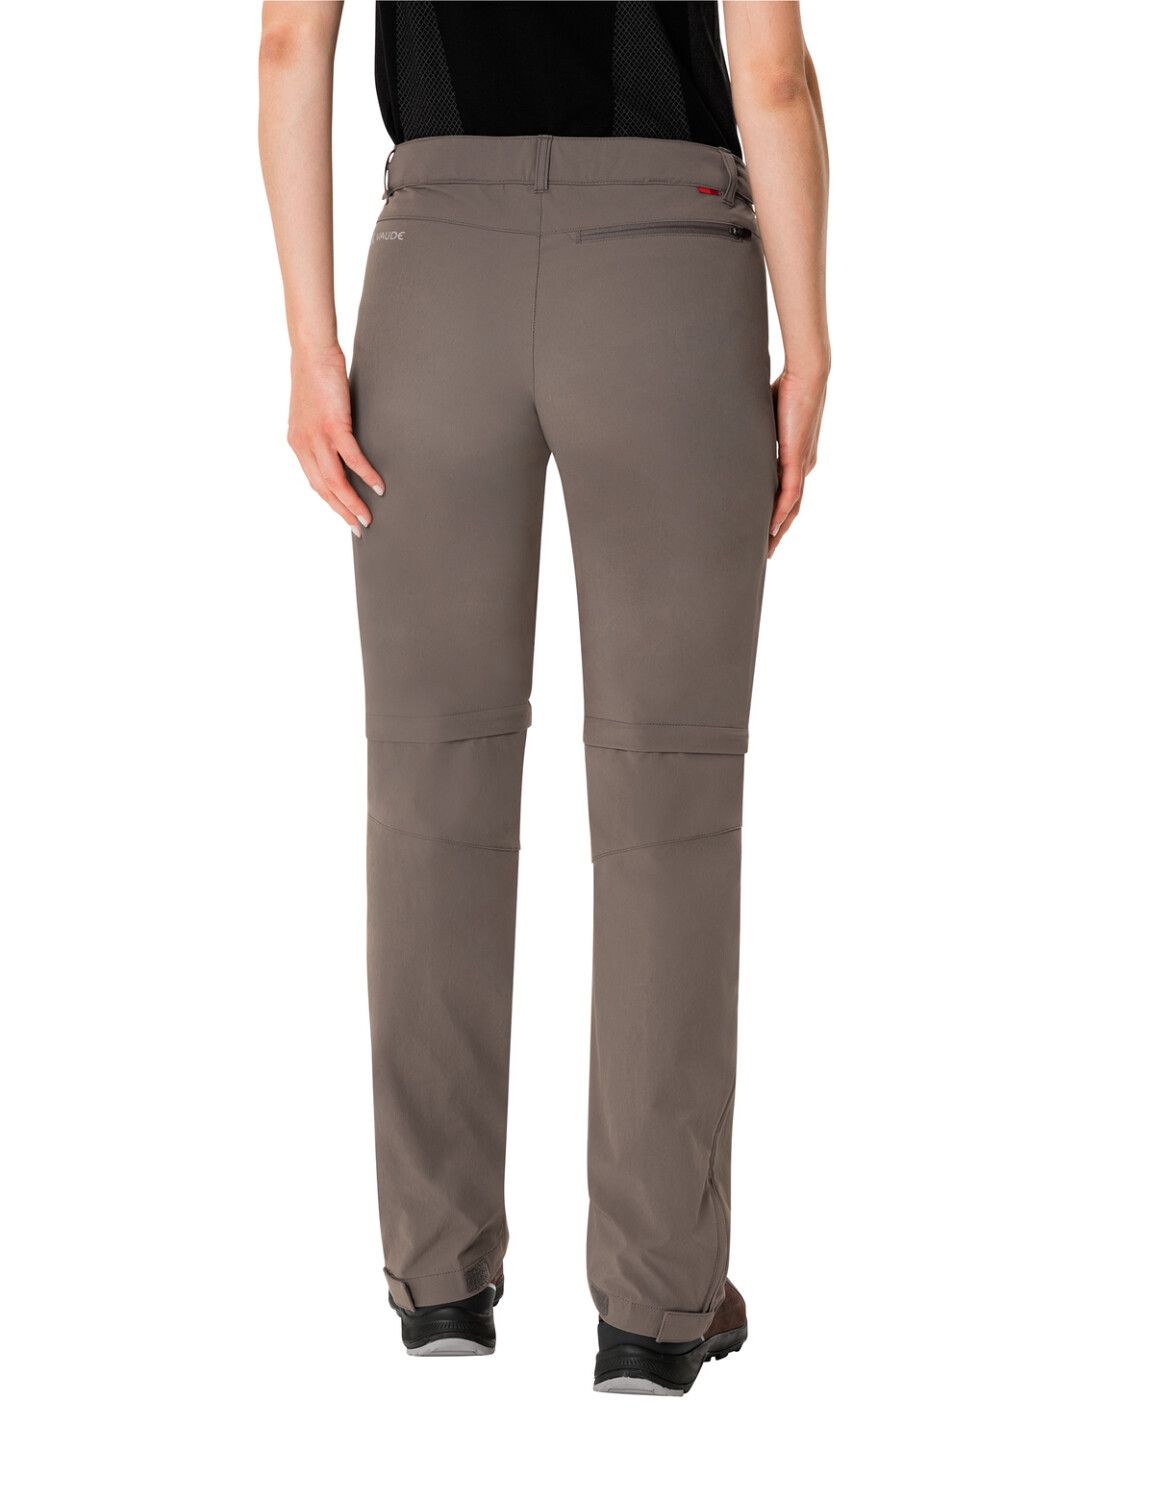 VAUDE Women's Farley Stretch ZO T-Zip Pants (Bild 59)